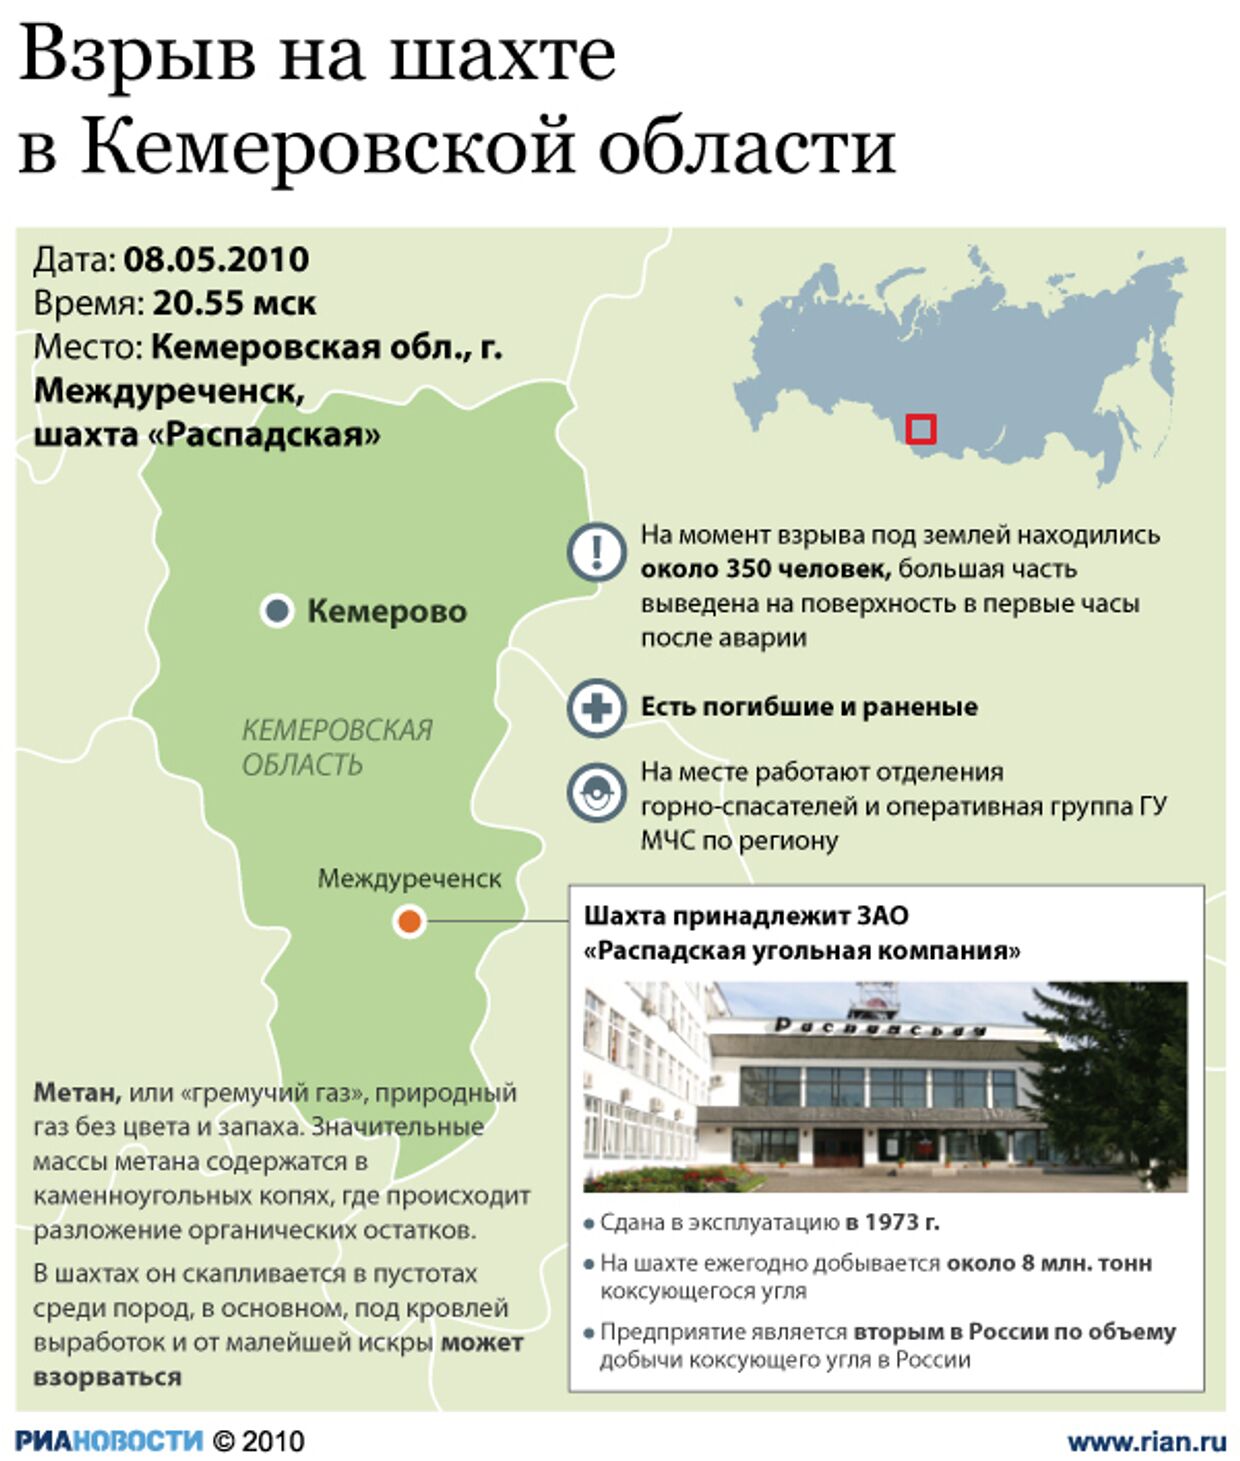 Взрыв на шахте в Кемеровской области